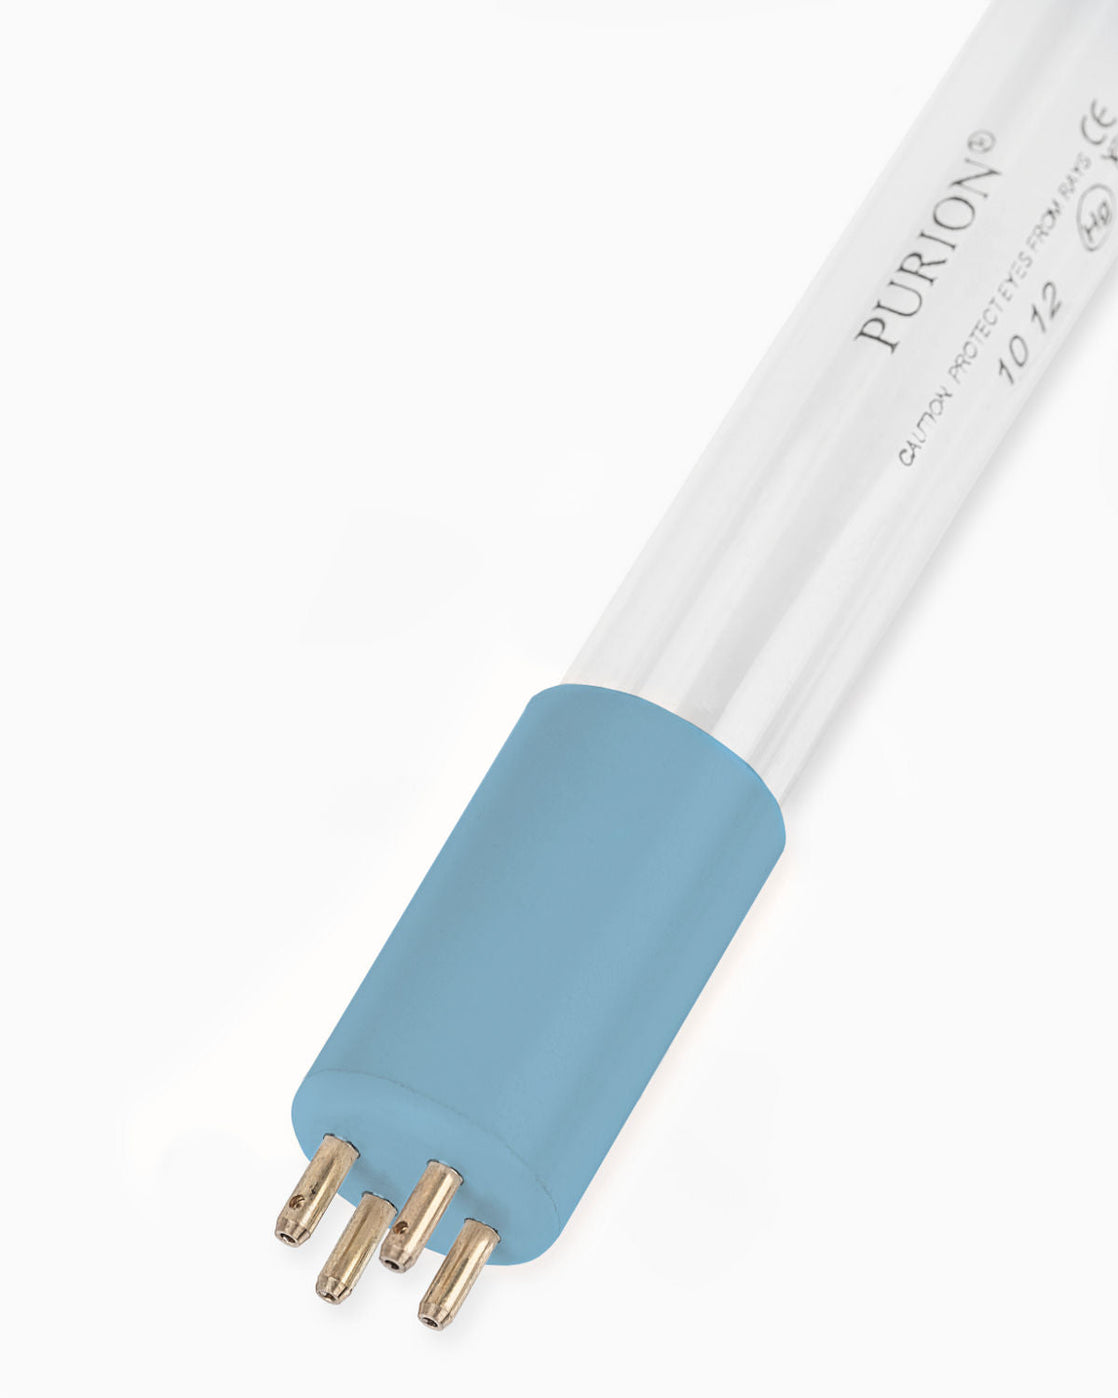 Eine PURION 1000 PVC-U 12V/24V DC OTC Plus Blaulichtröhre für UV-C-Reinigung auf weißem Hintergrund. (Marke: PURION GmbH)